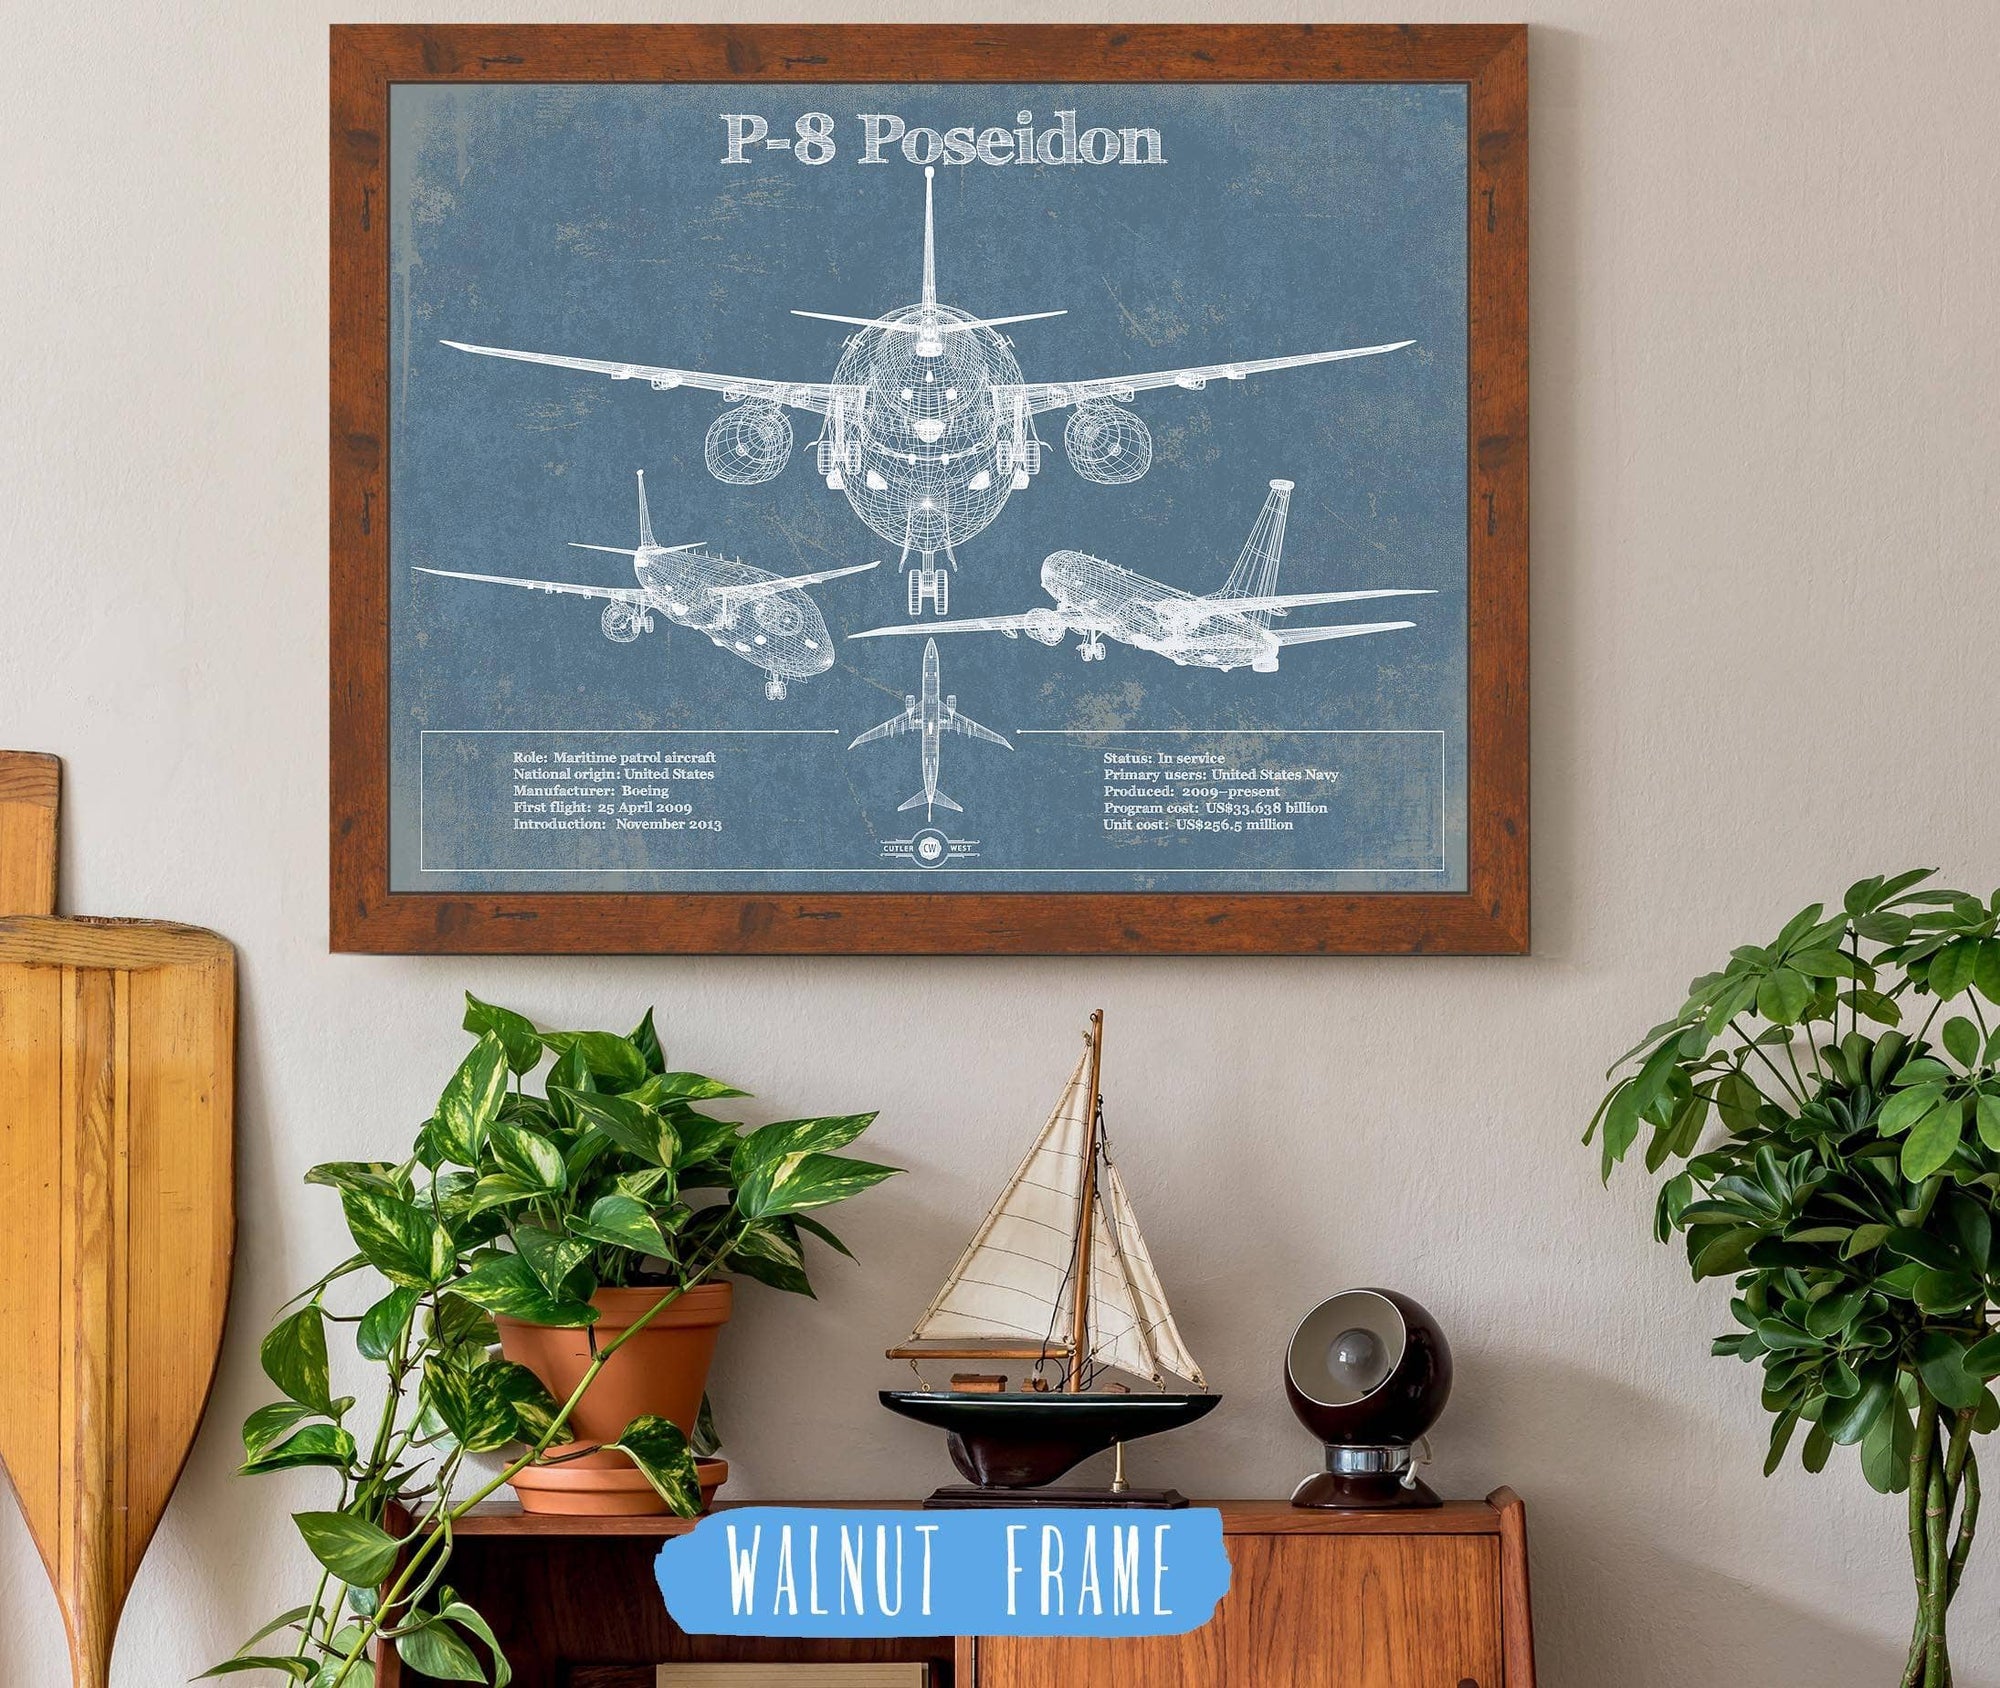 Cutler West Military Aircraft 14" x 11" / Walnut Frame P-8 Poseidon Aircraft Blueprint Original Military Wall Art 801226429-TOP